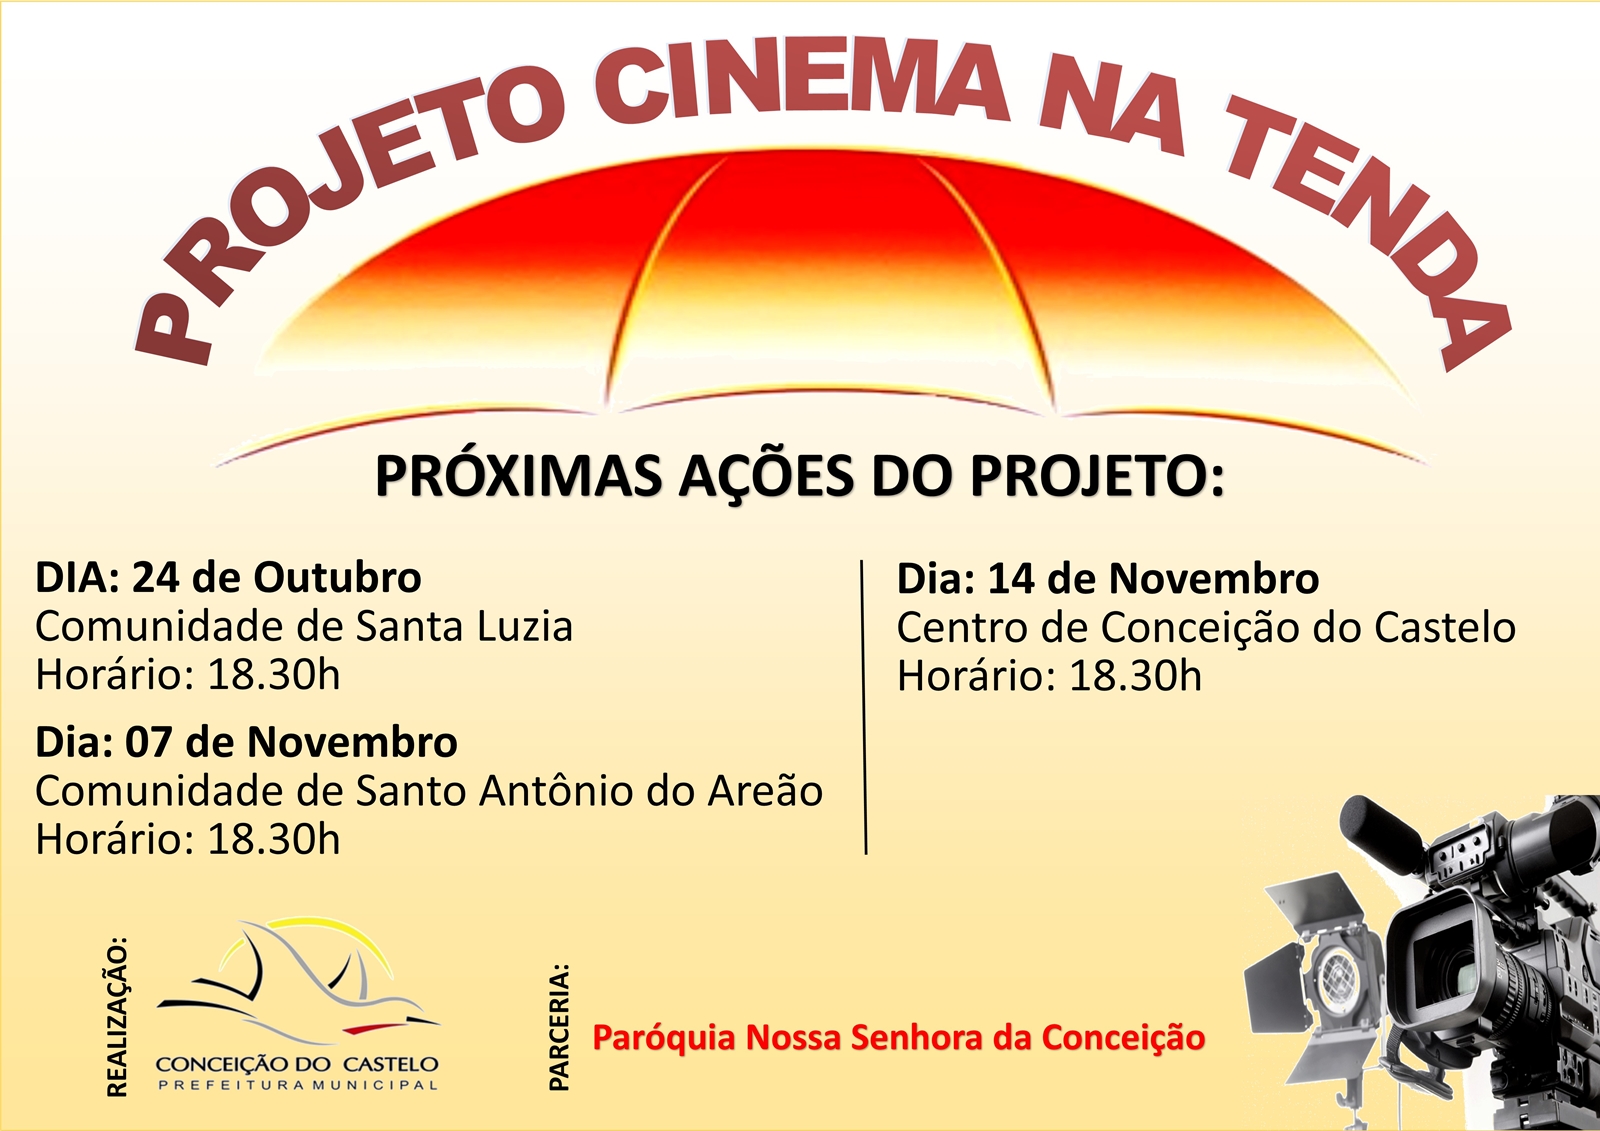 Projeto Cinema na Tenda lança próximas ações nas comunidades